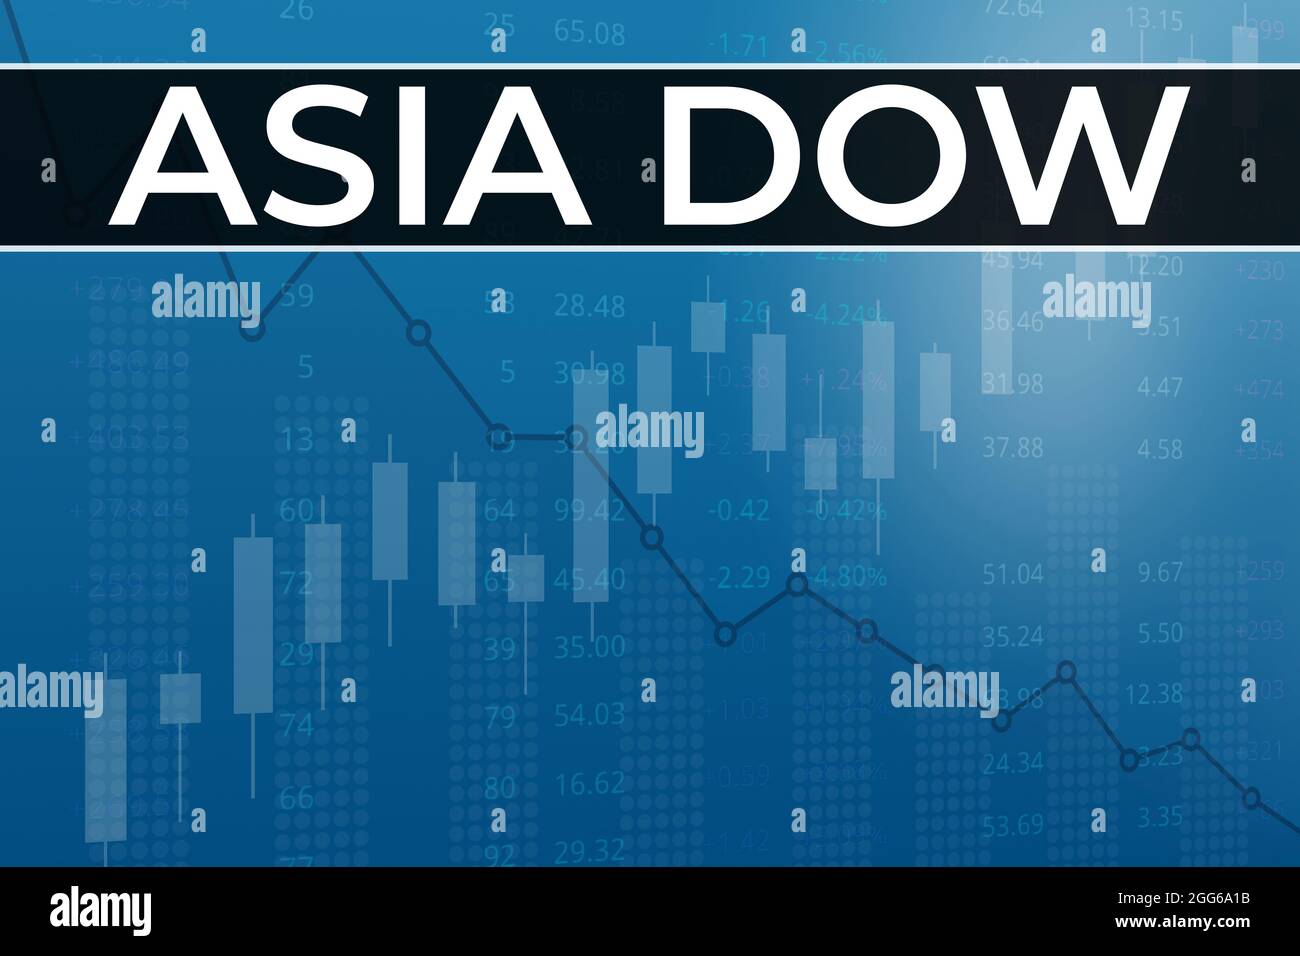 Indice boursier mondial Asie Dow USD (ticker ADOW) sur fond financier bleu  à partir de chiffres, graphiques, piliers, bougies. Tendance vers le haut  et vers le bas, plat. 3D i Photo Stock -